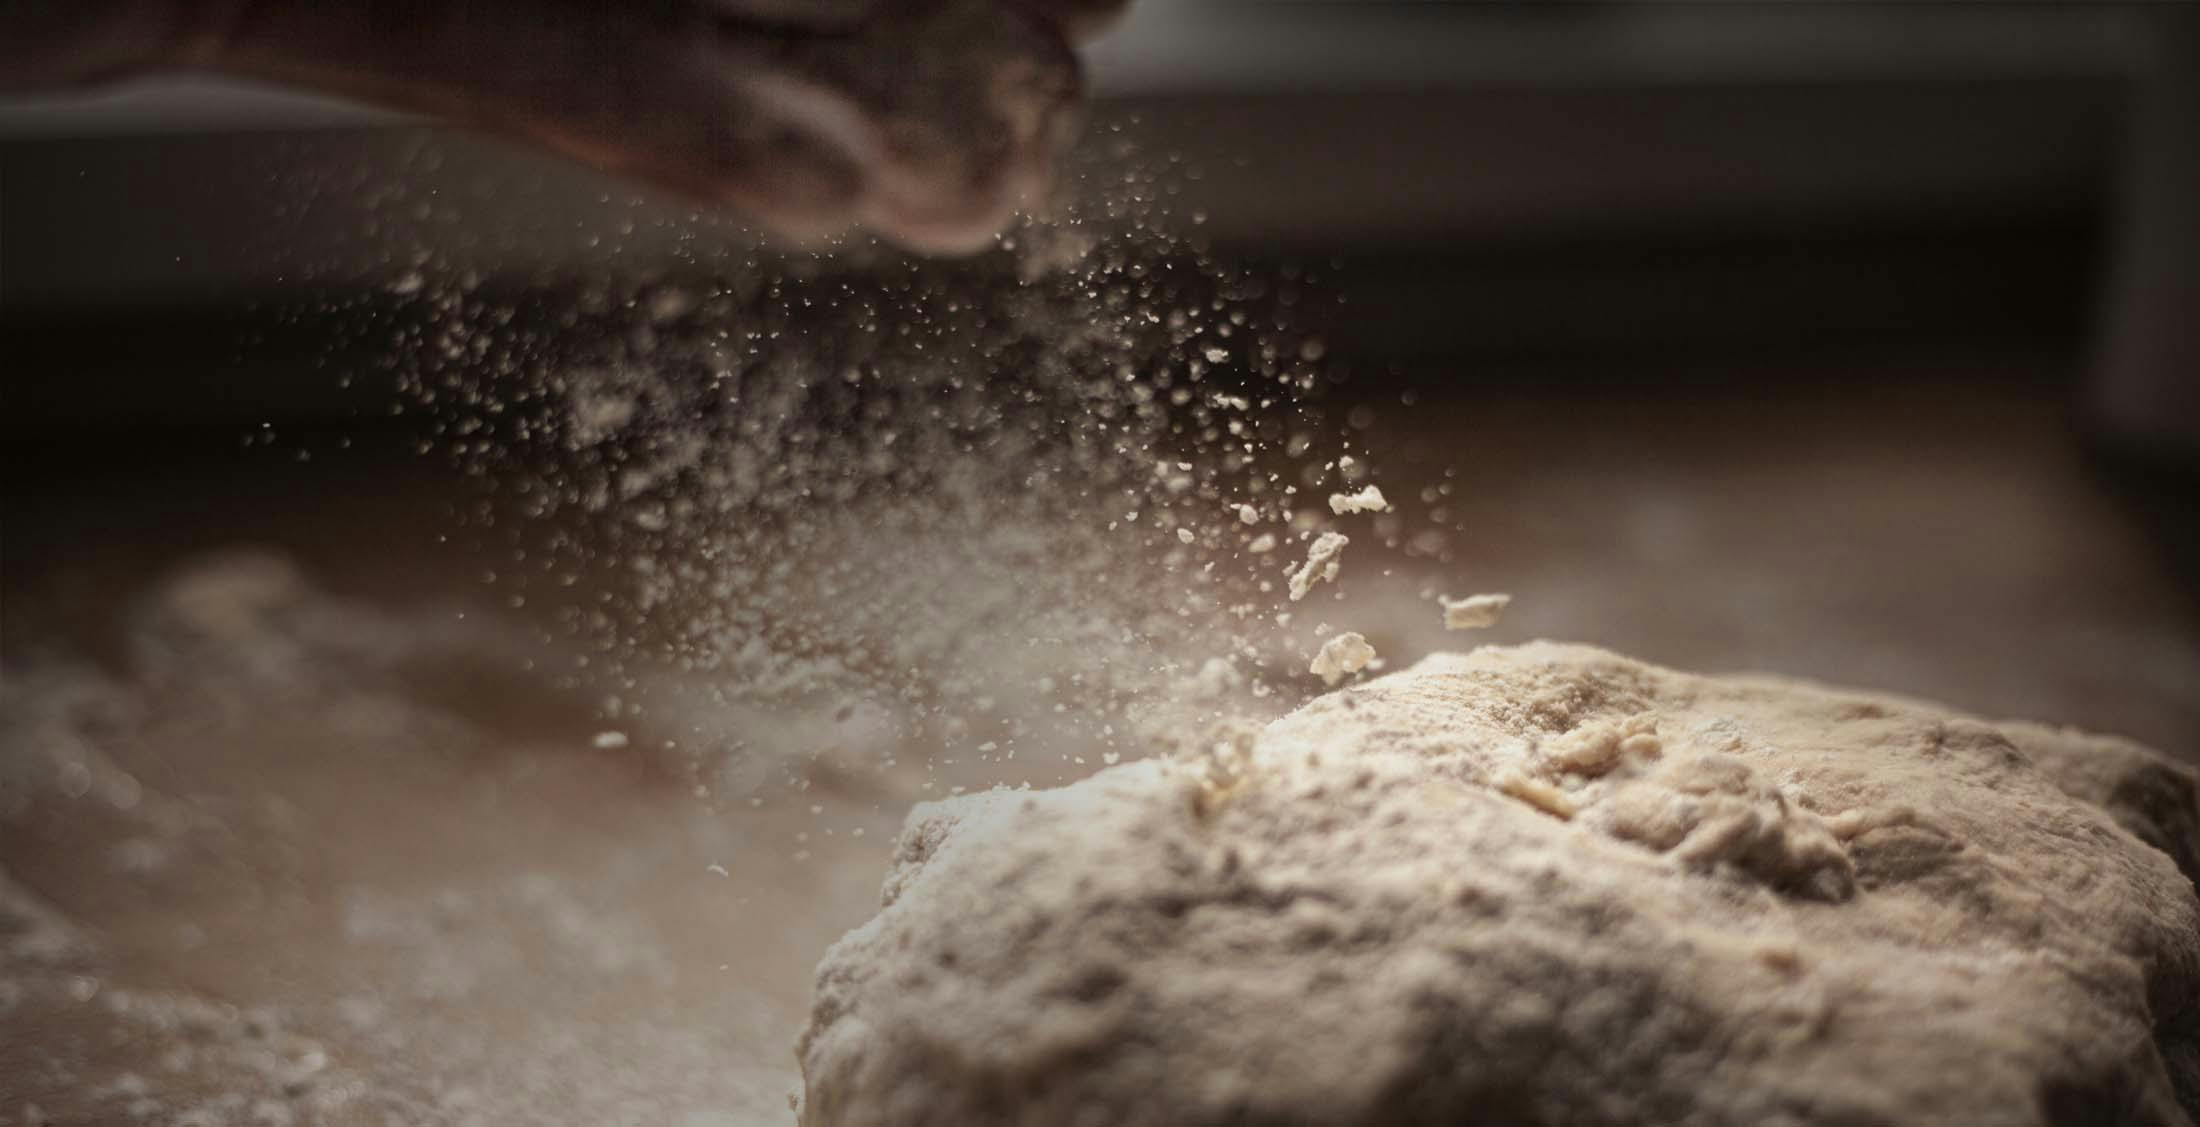 Preparing leavened bread dough